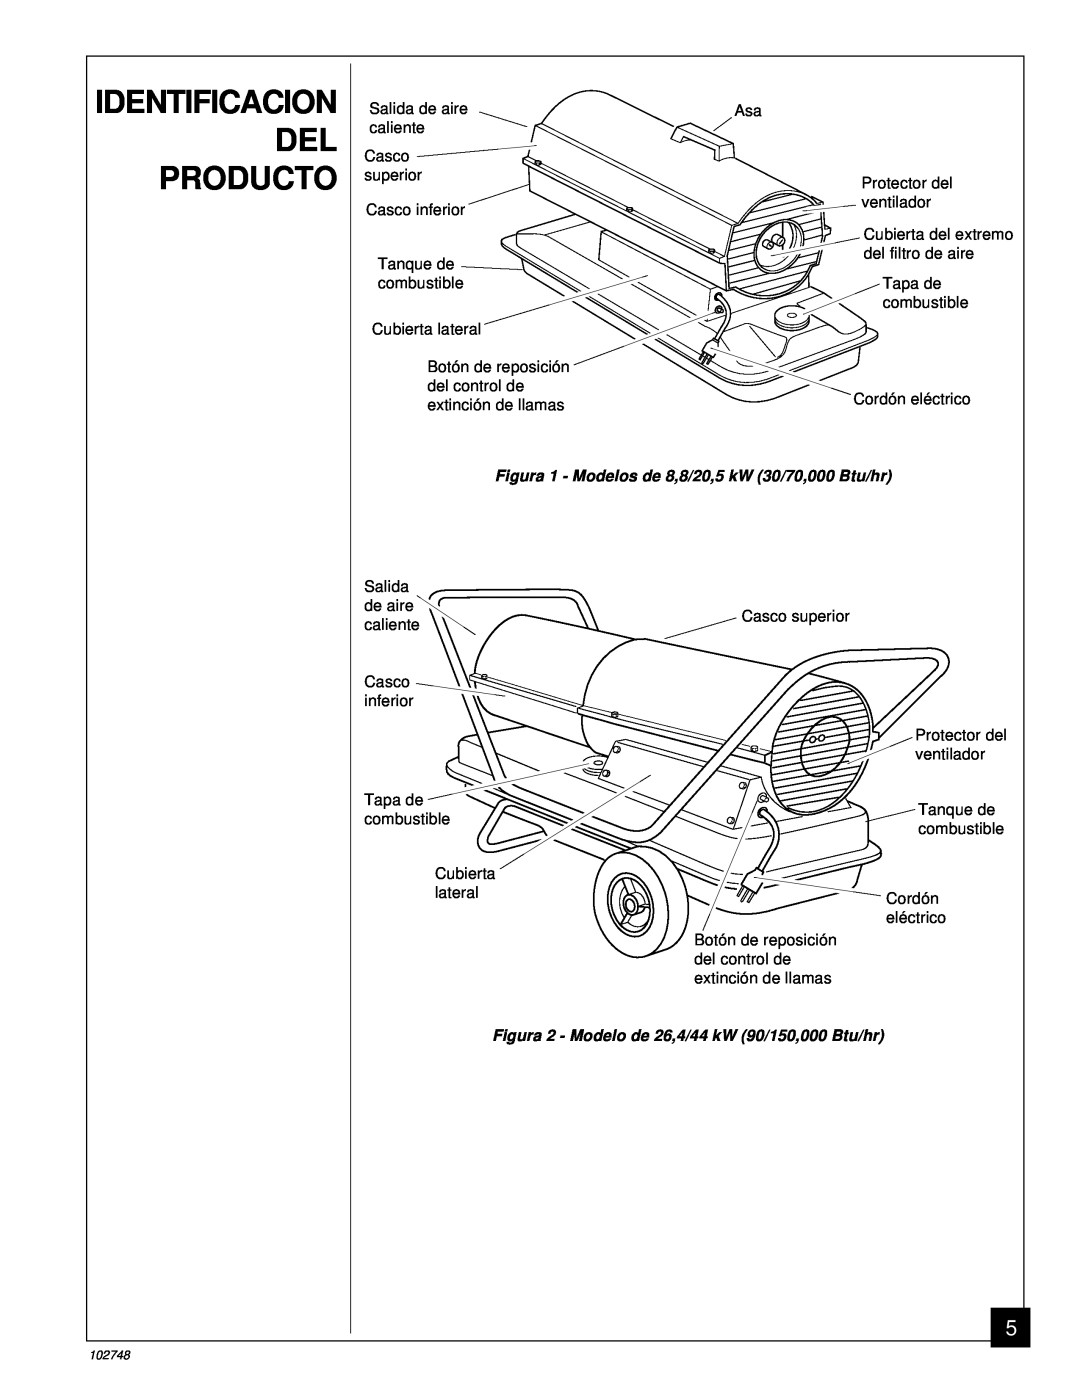 Desa 000) 26, 000) 20 owner manual Identificacion Del Producto, Figura 2 - Modelo de 26,4/44 kW 90/150,000 Btu/hr 